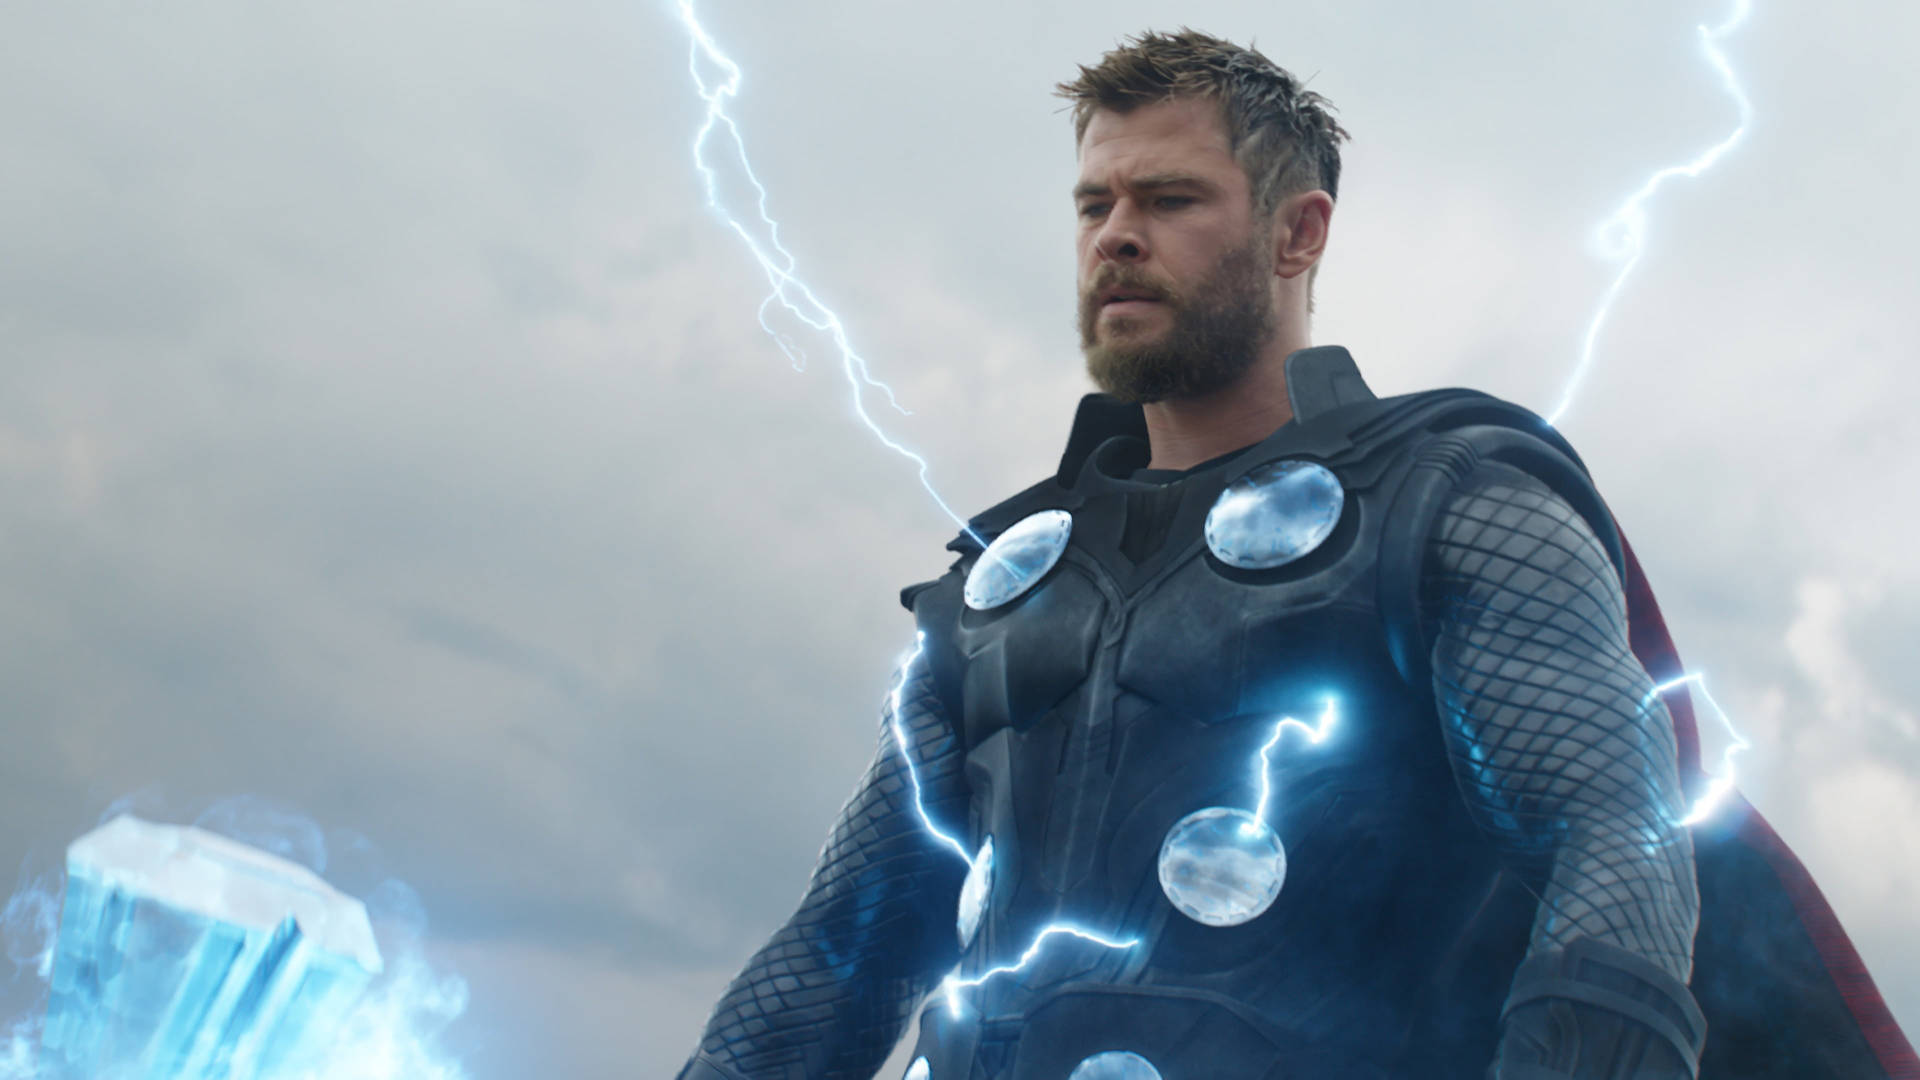 Download Avengers: Endgame 4k Thor Wallpaper 